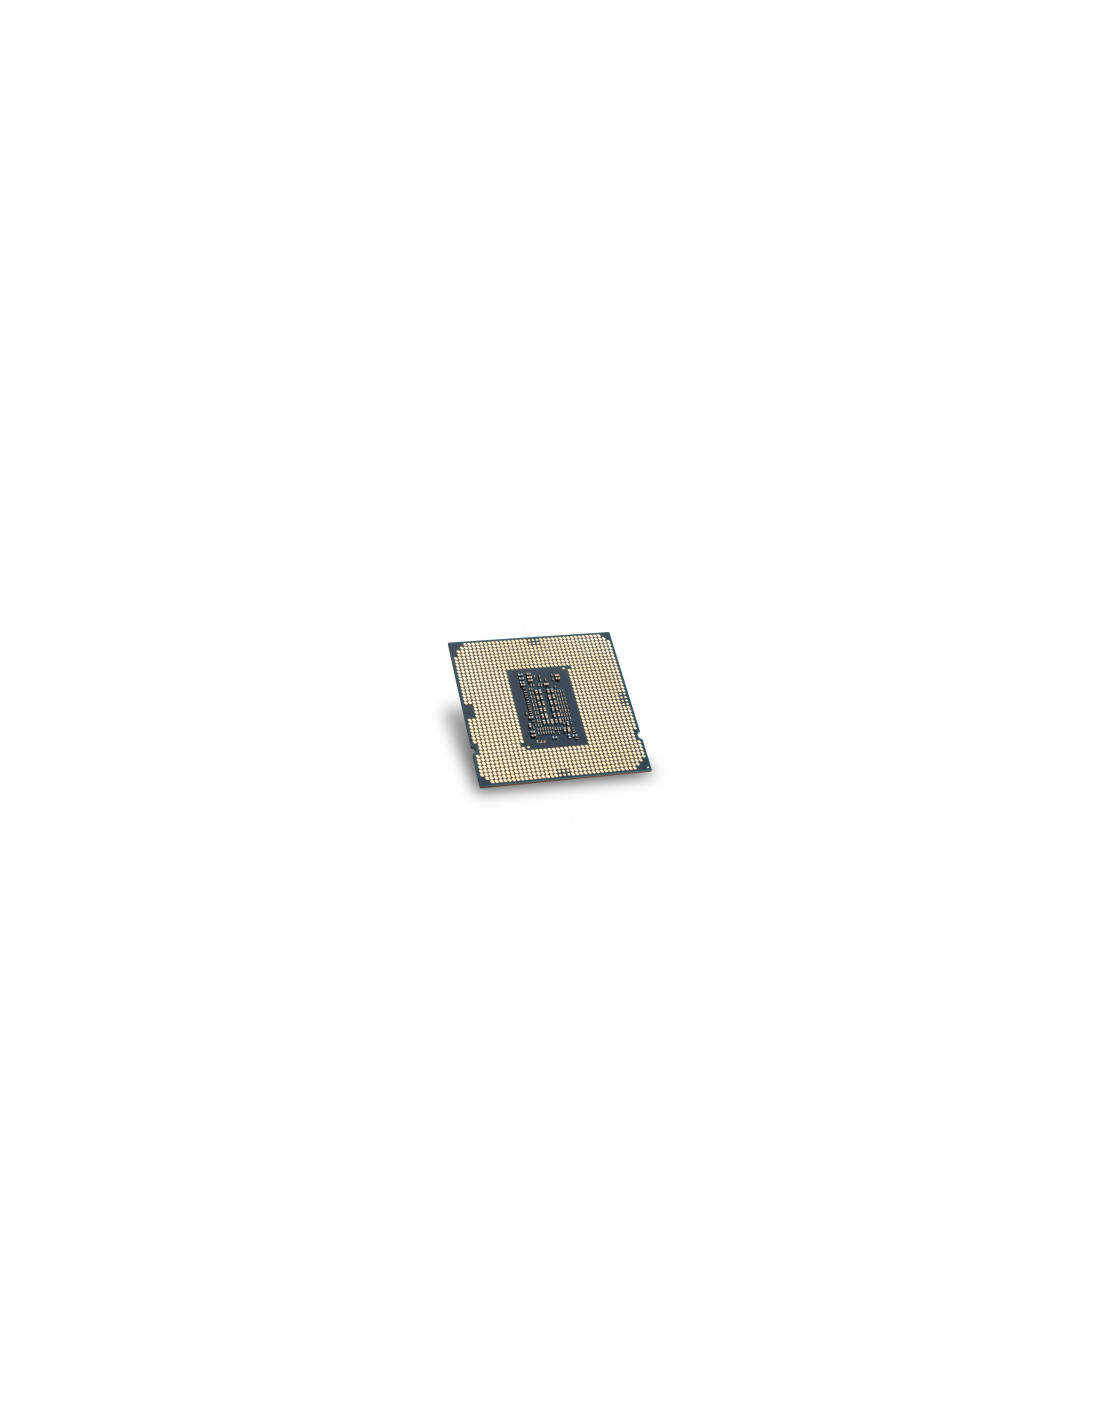 Intel Core i5-12400 - Procesador 1700 con gráficos integrados Intel UHD 730